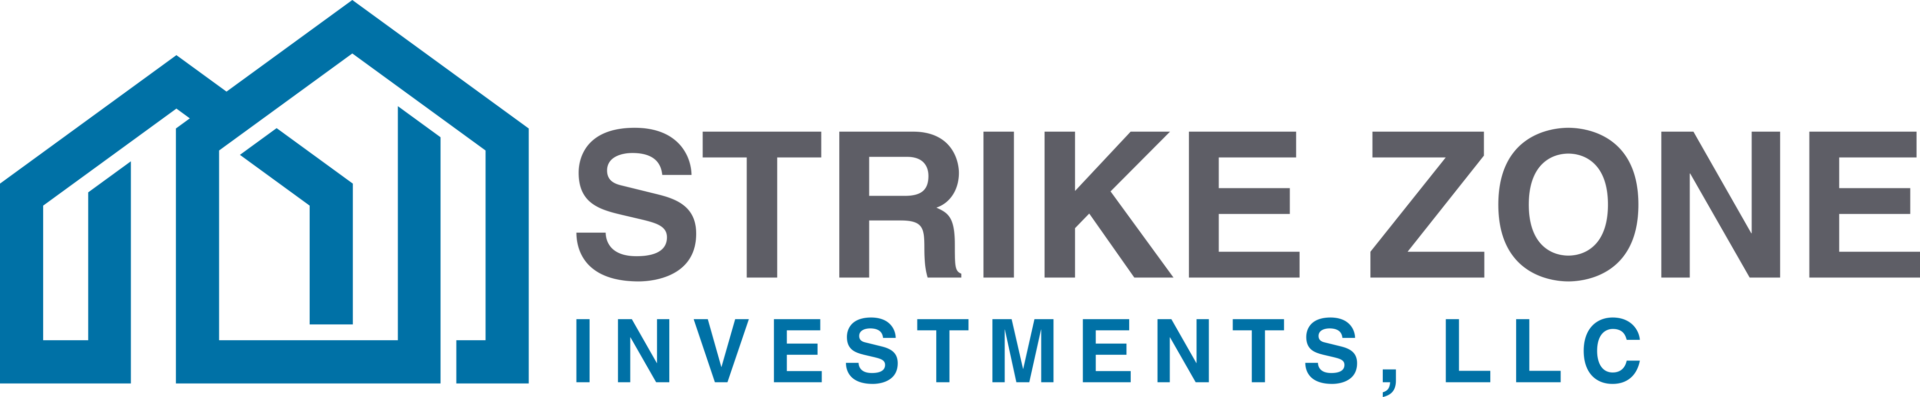 Strike Zone Investments, LLC logo